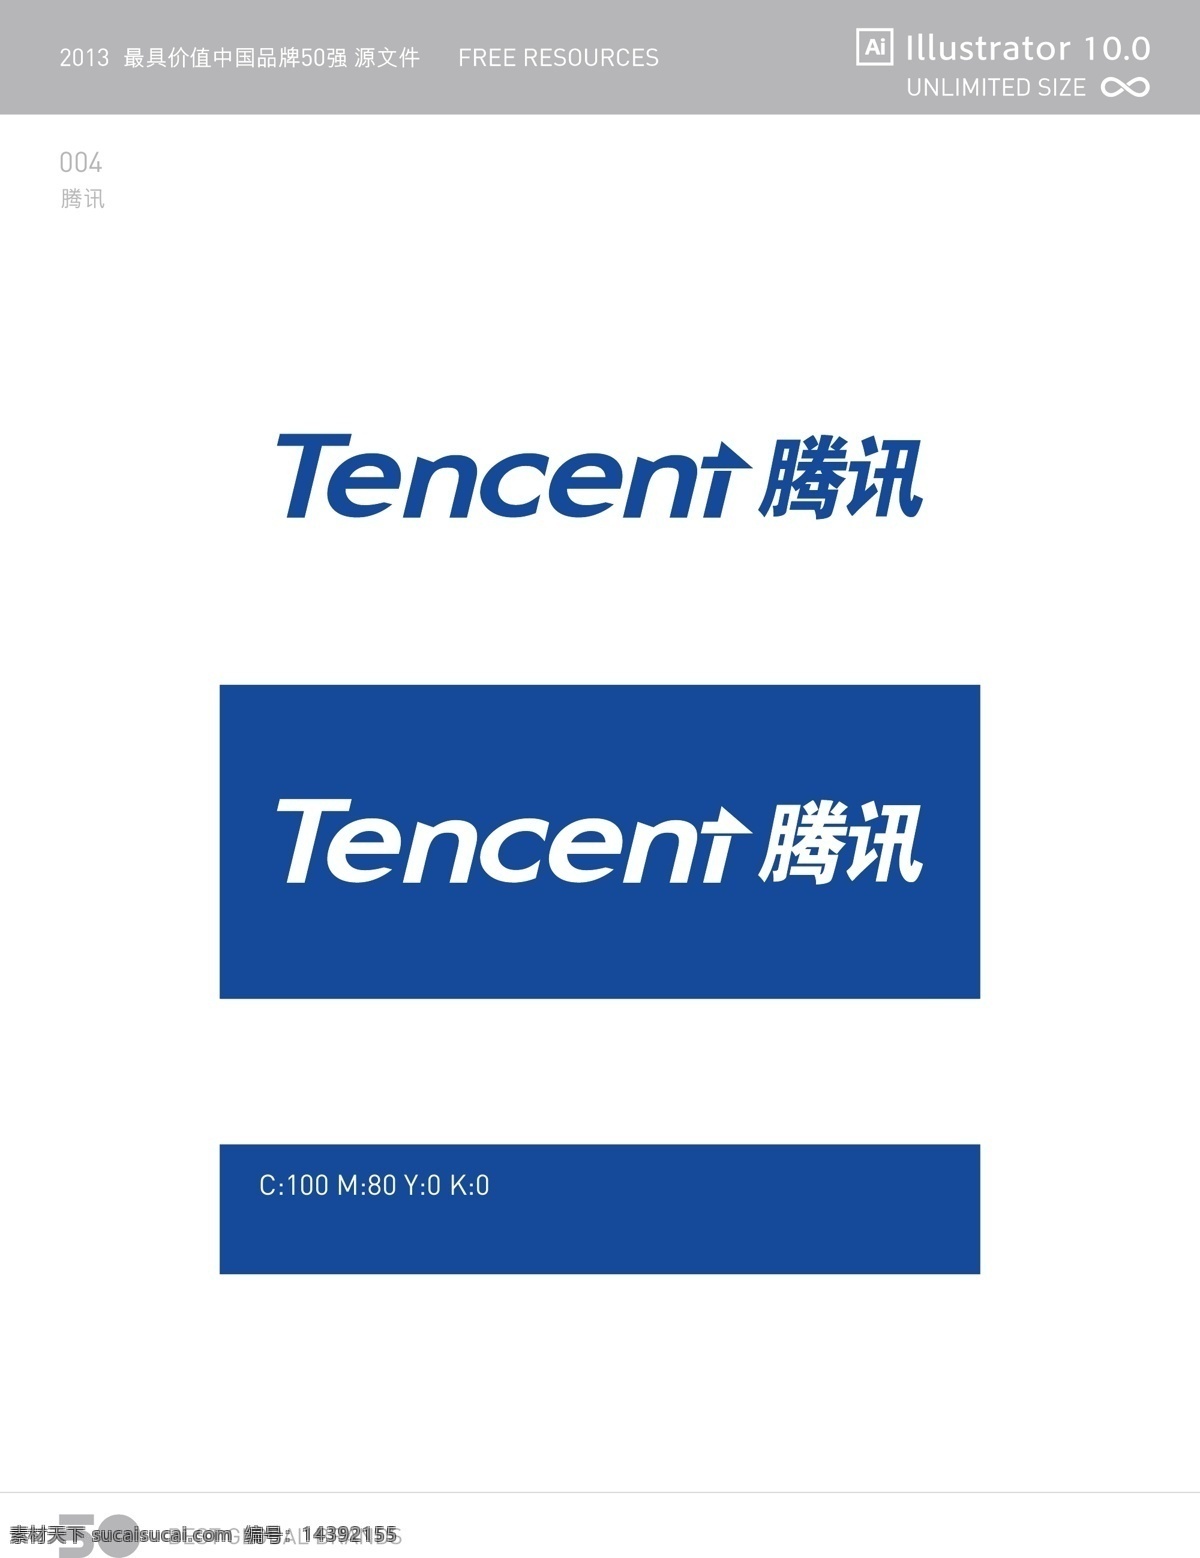 腾讯 logo tencent 企鹅 蓝色 标志图标 企业 标志